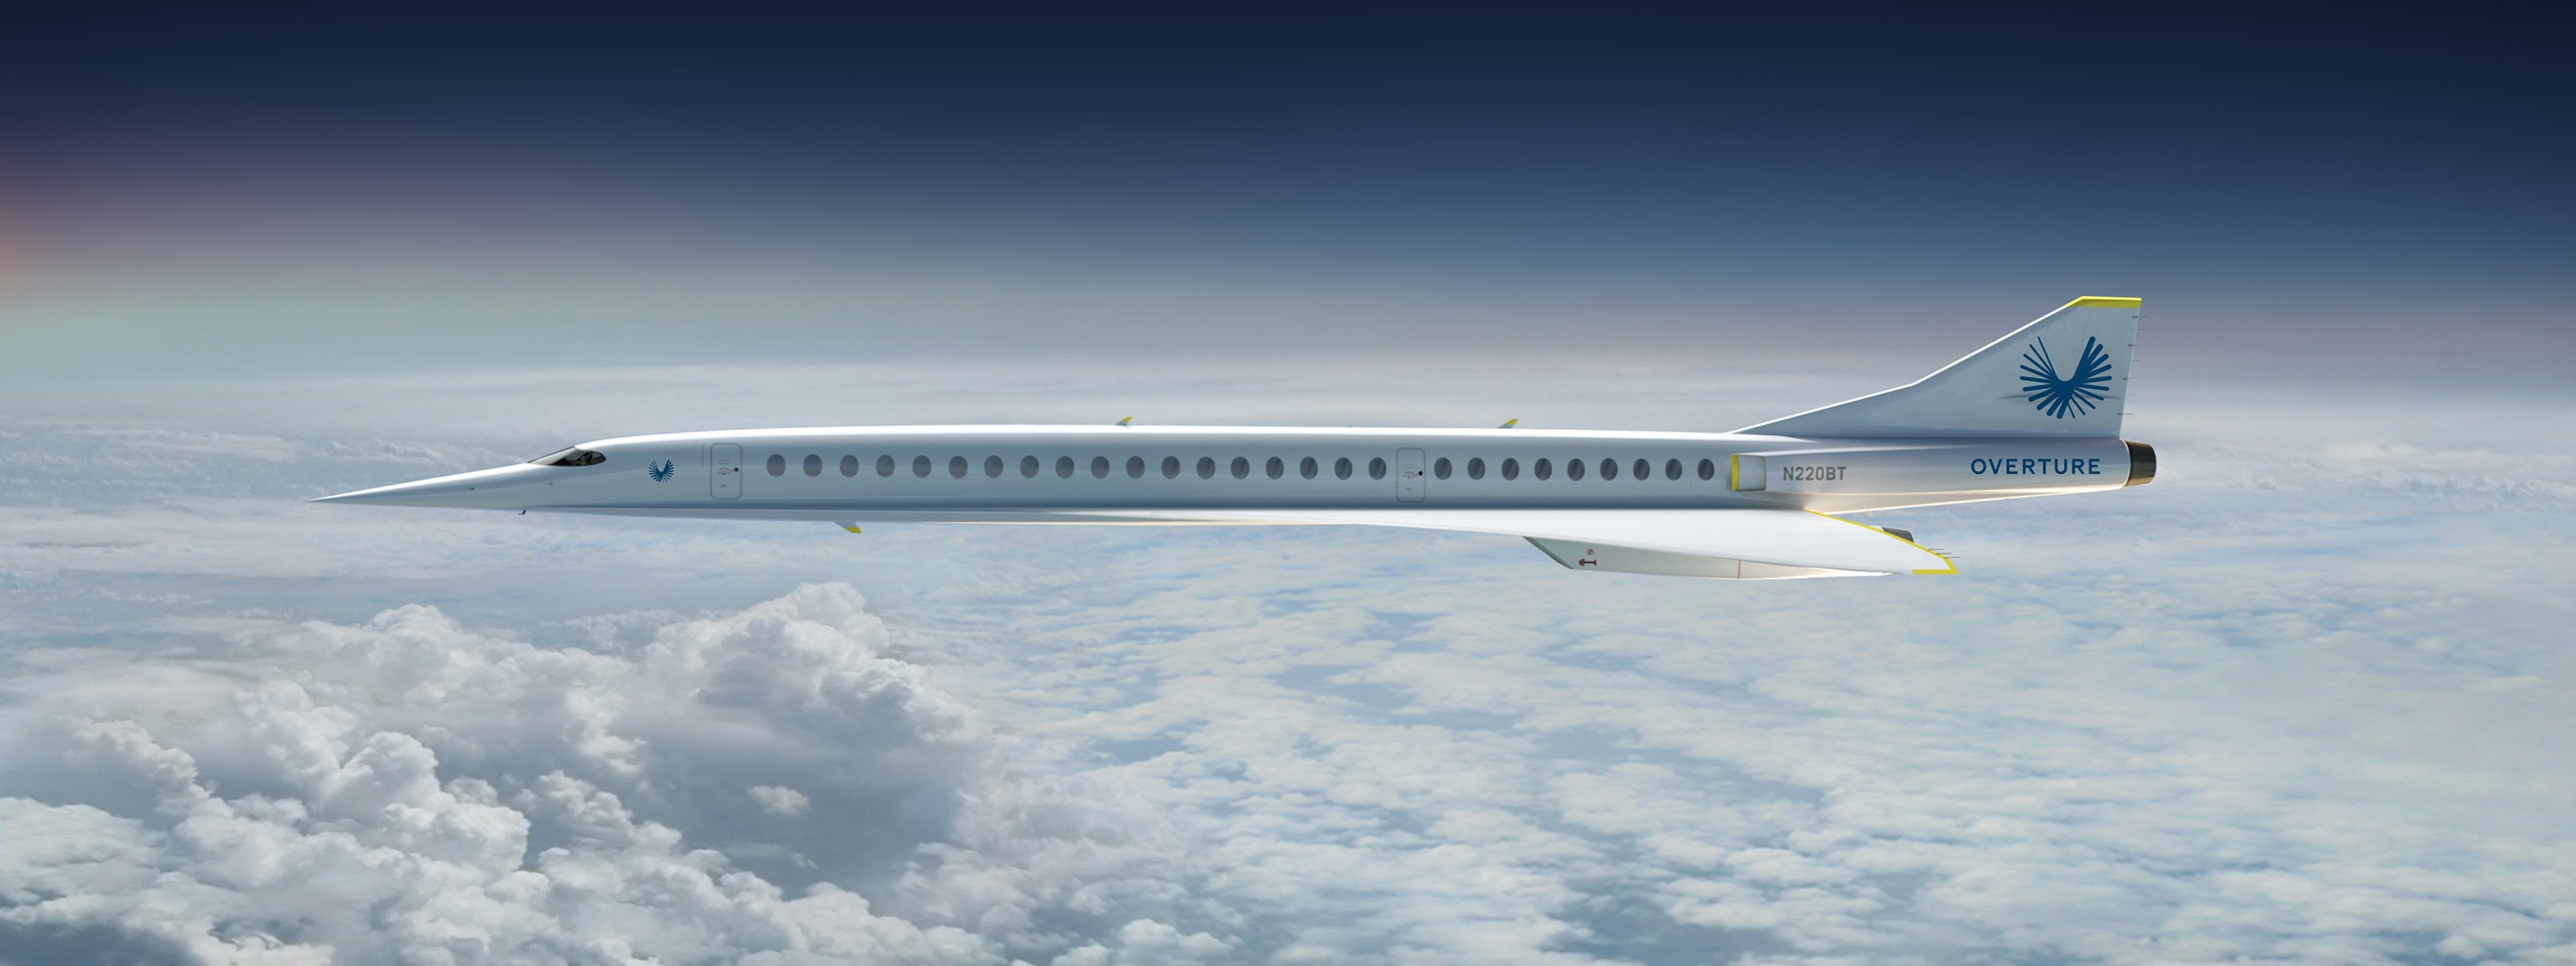 Megvan a legendás Concorde utóda